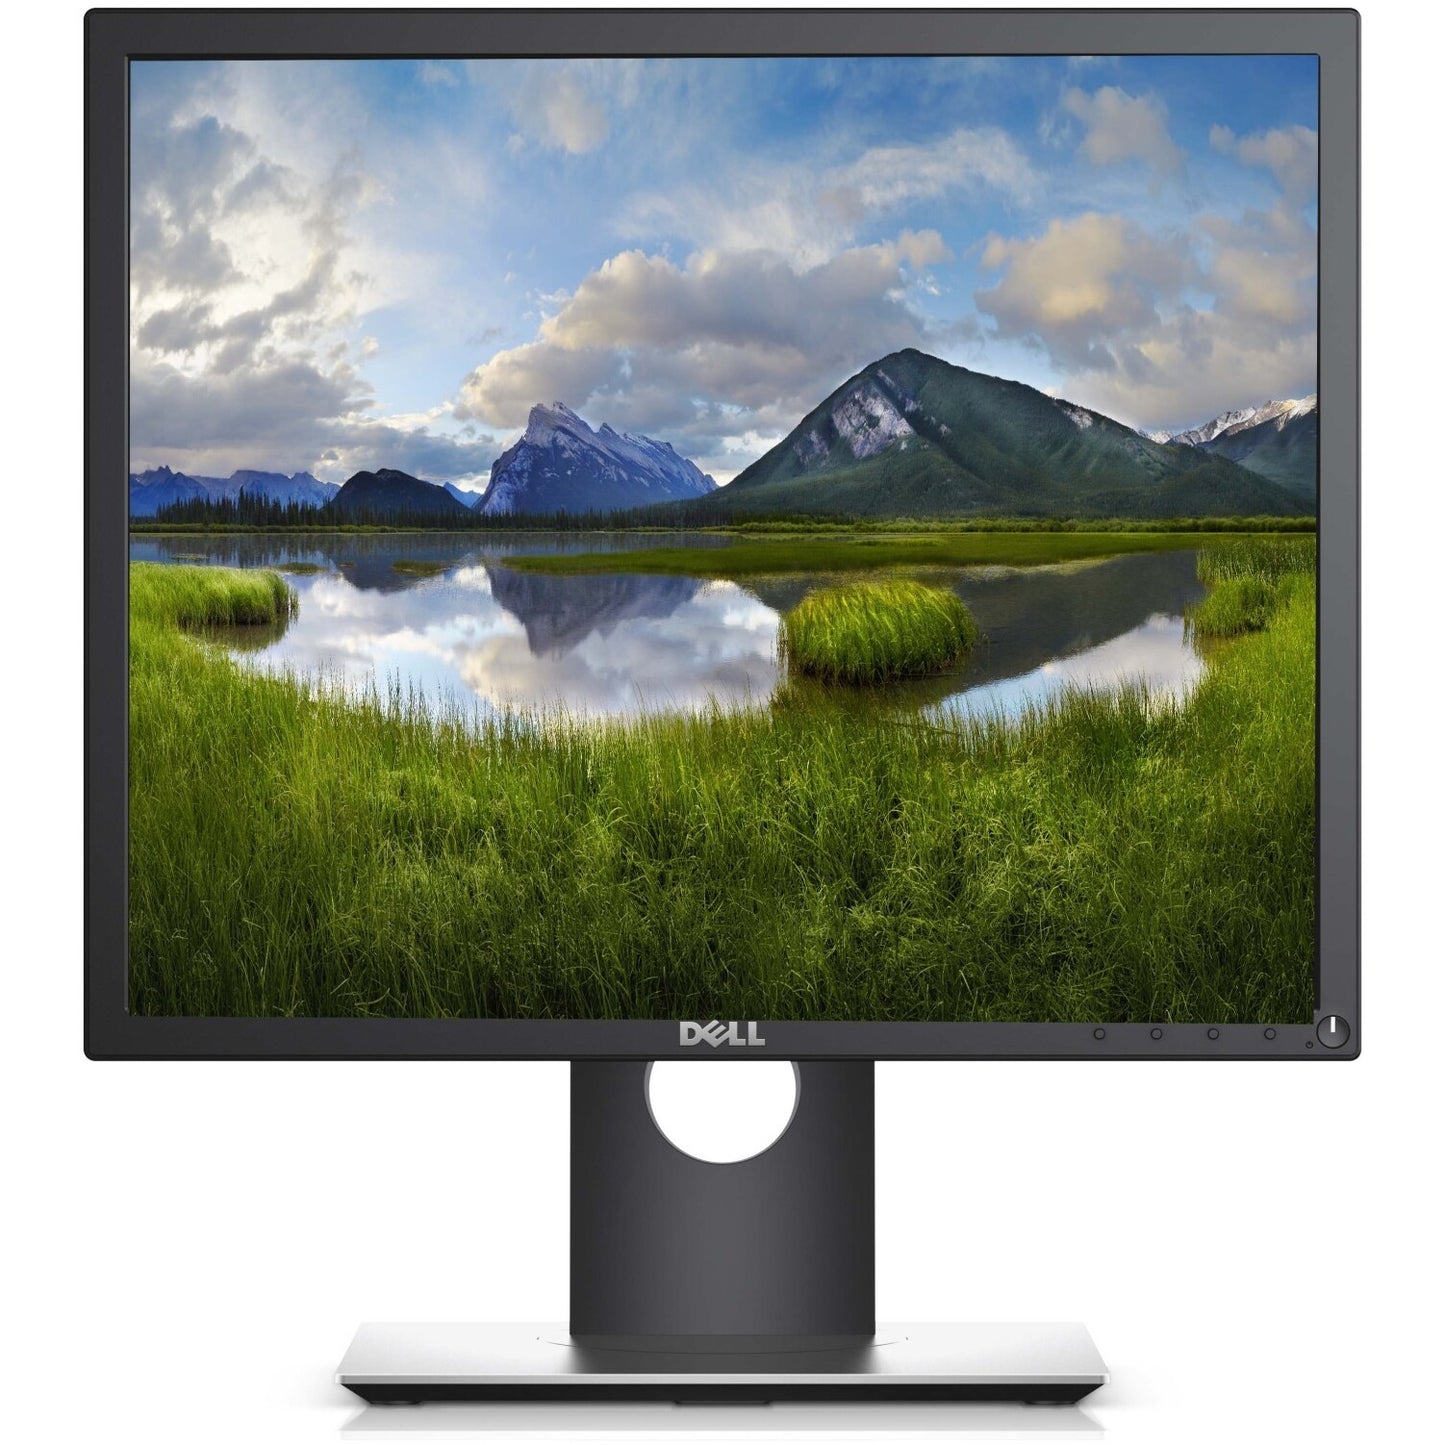 Dell 17" Monitor #900SE